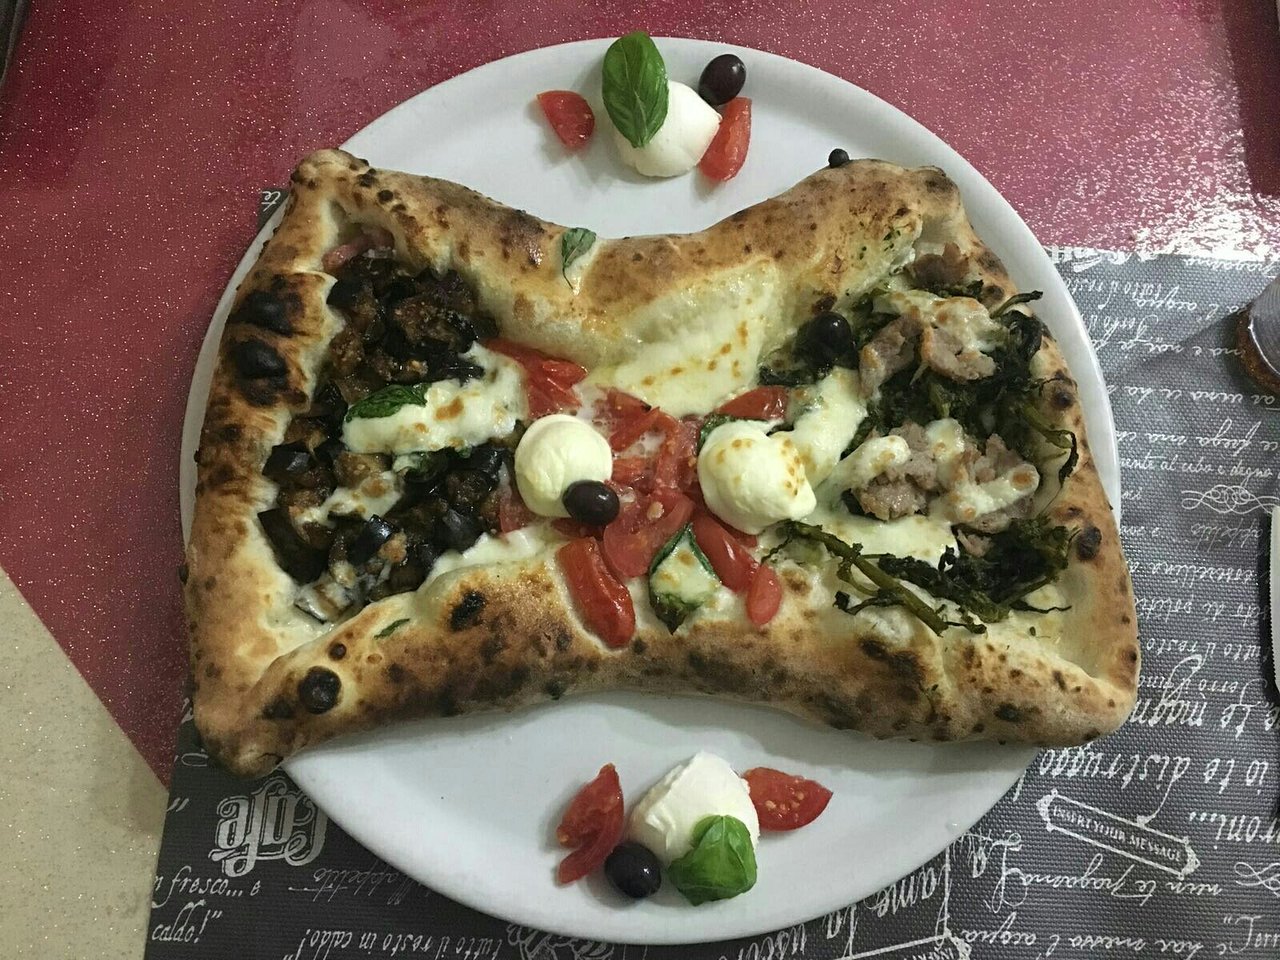 Antica Pizzeria "volto Santo" Da Maruzziello, Marano di Napoli